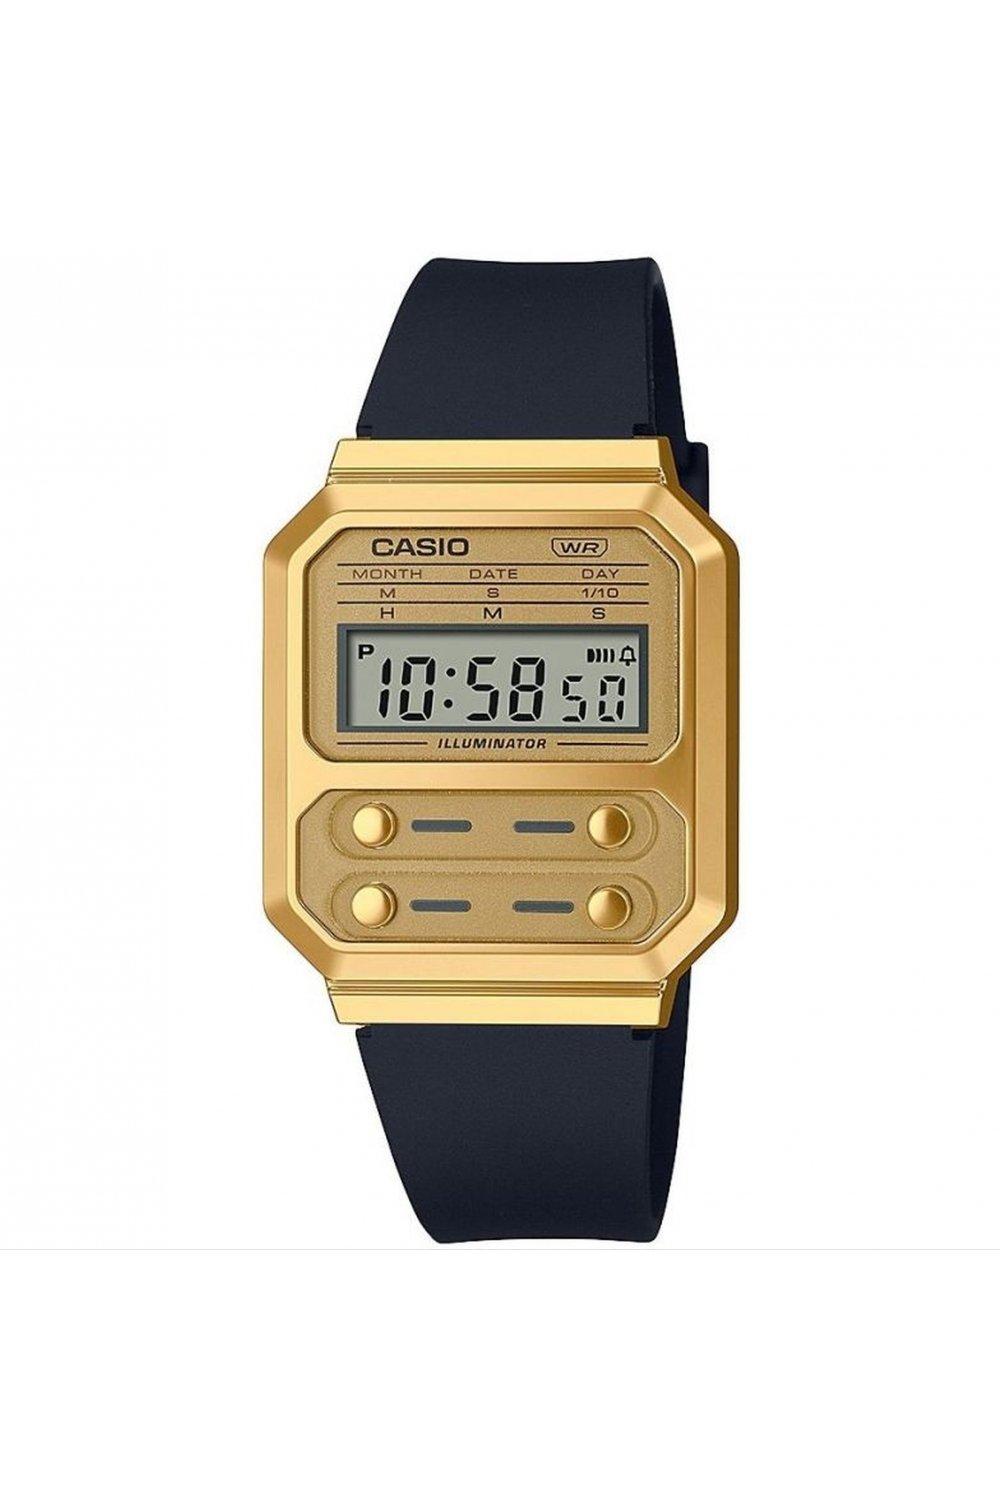 A100Wefg-9Aef Plastic/resin Classic Digital Watch - A100Wefg-9Aef